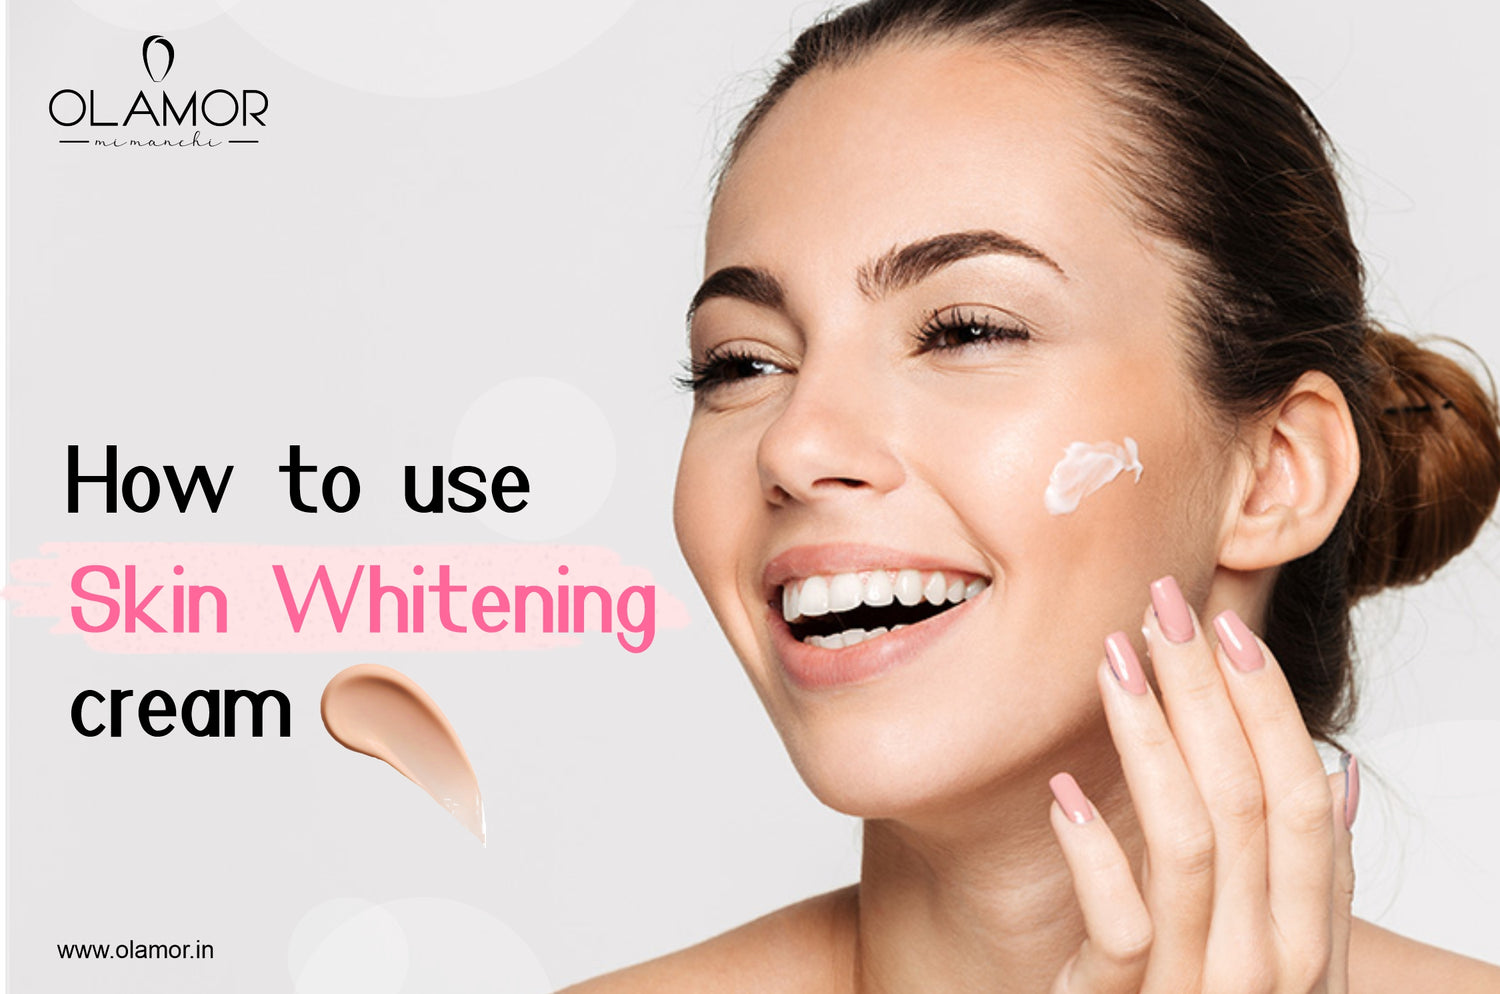 How to use Skin whitening cream